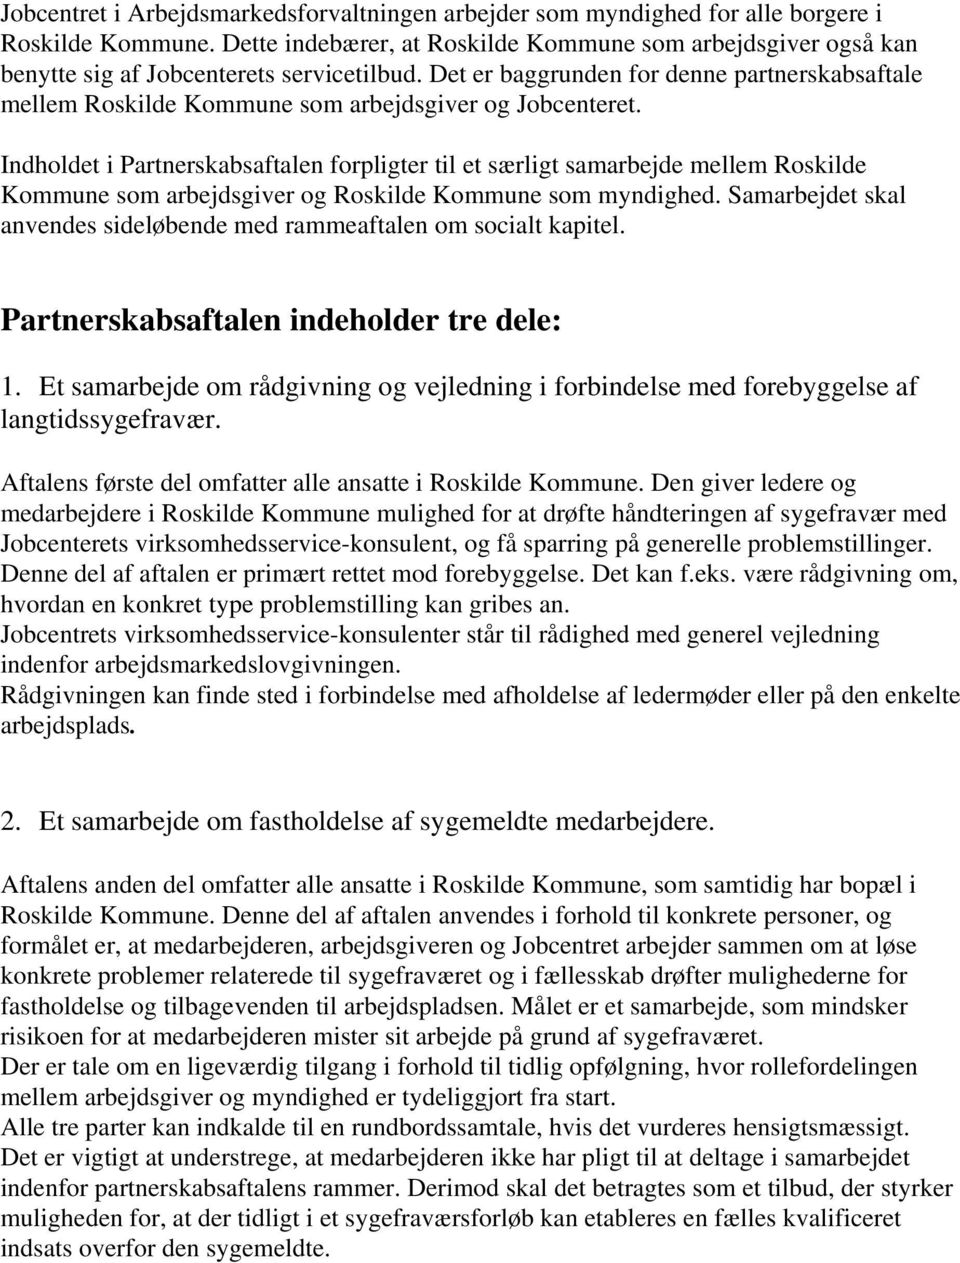 Det er baggrunden for denne partnerskabsaftale mellem Roskilde Kommune som arbejdsgiver og Jobcenteret.